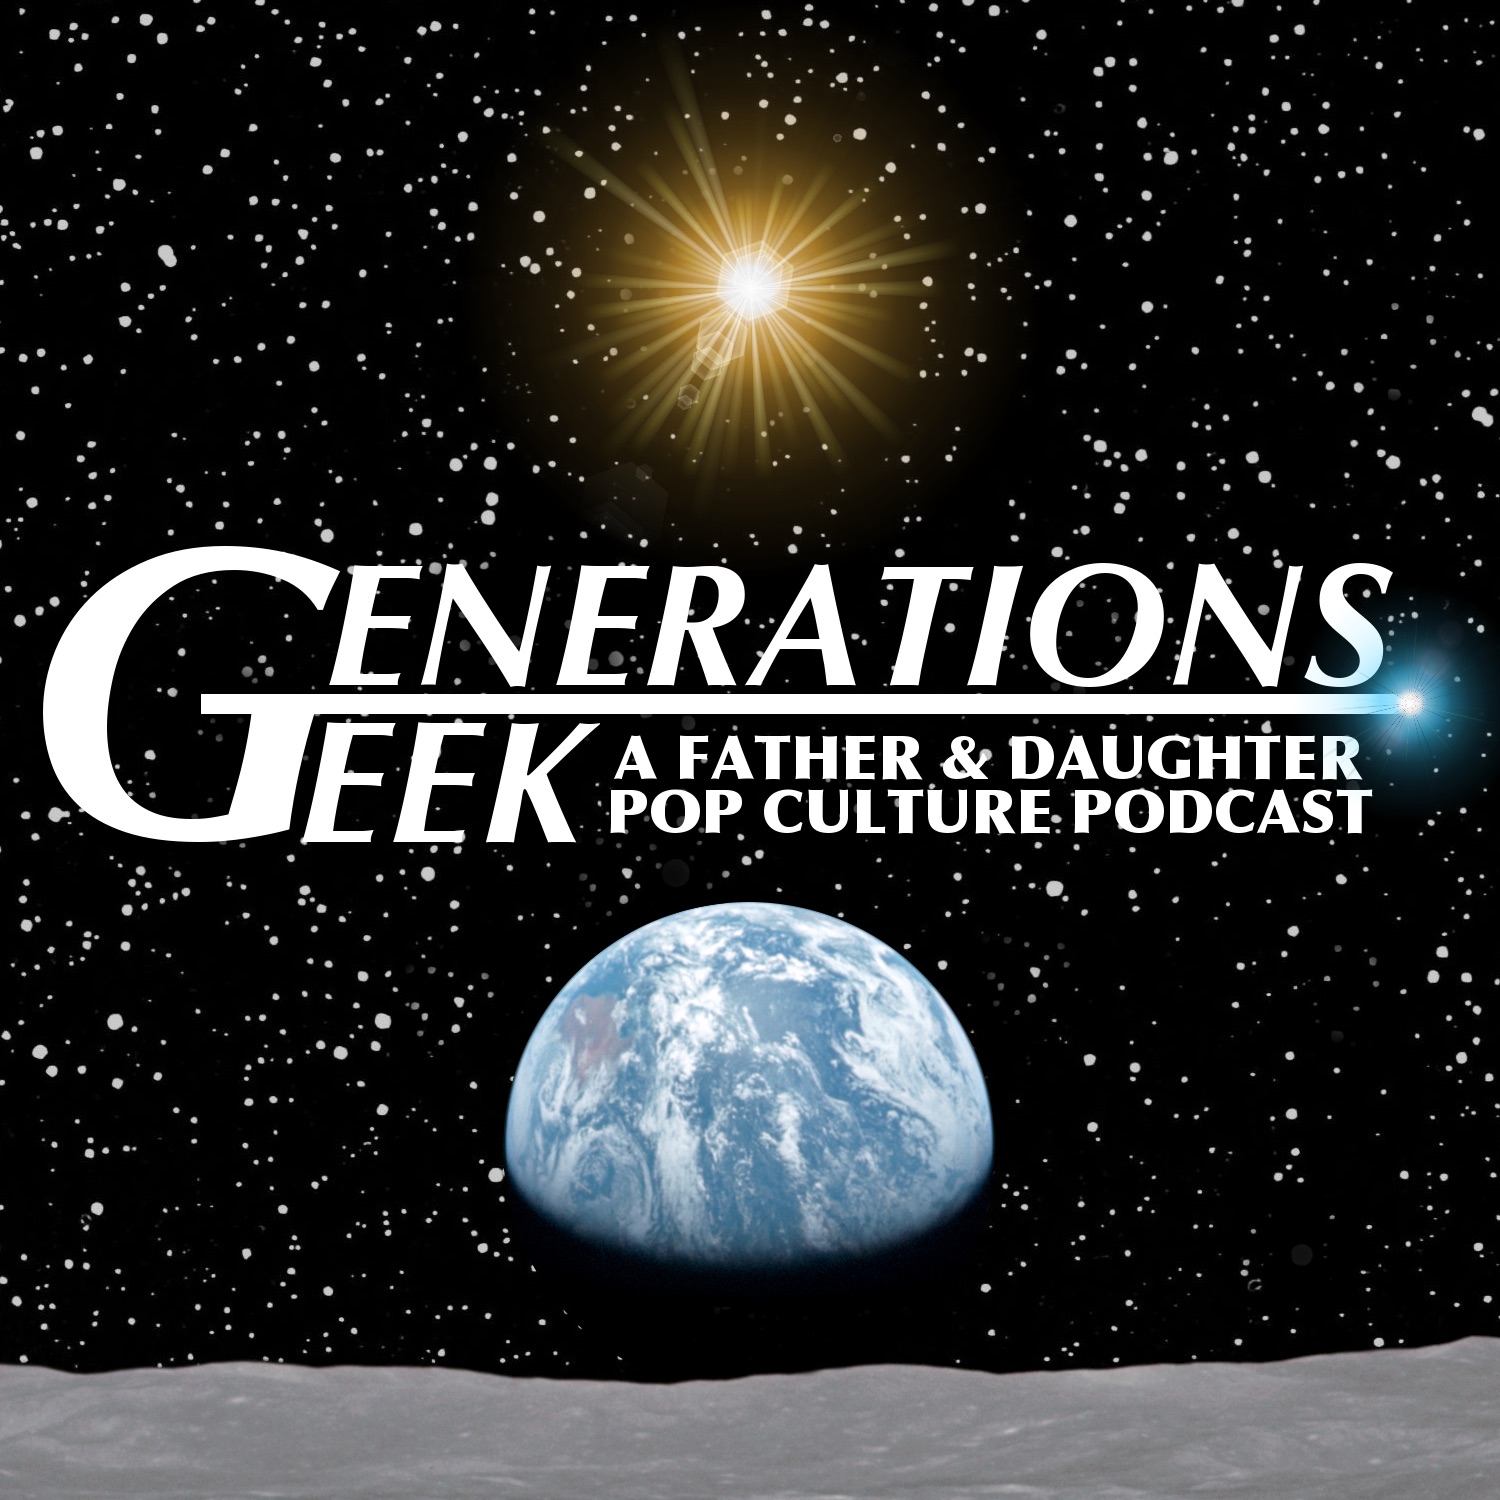 Generations Geek